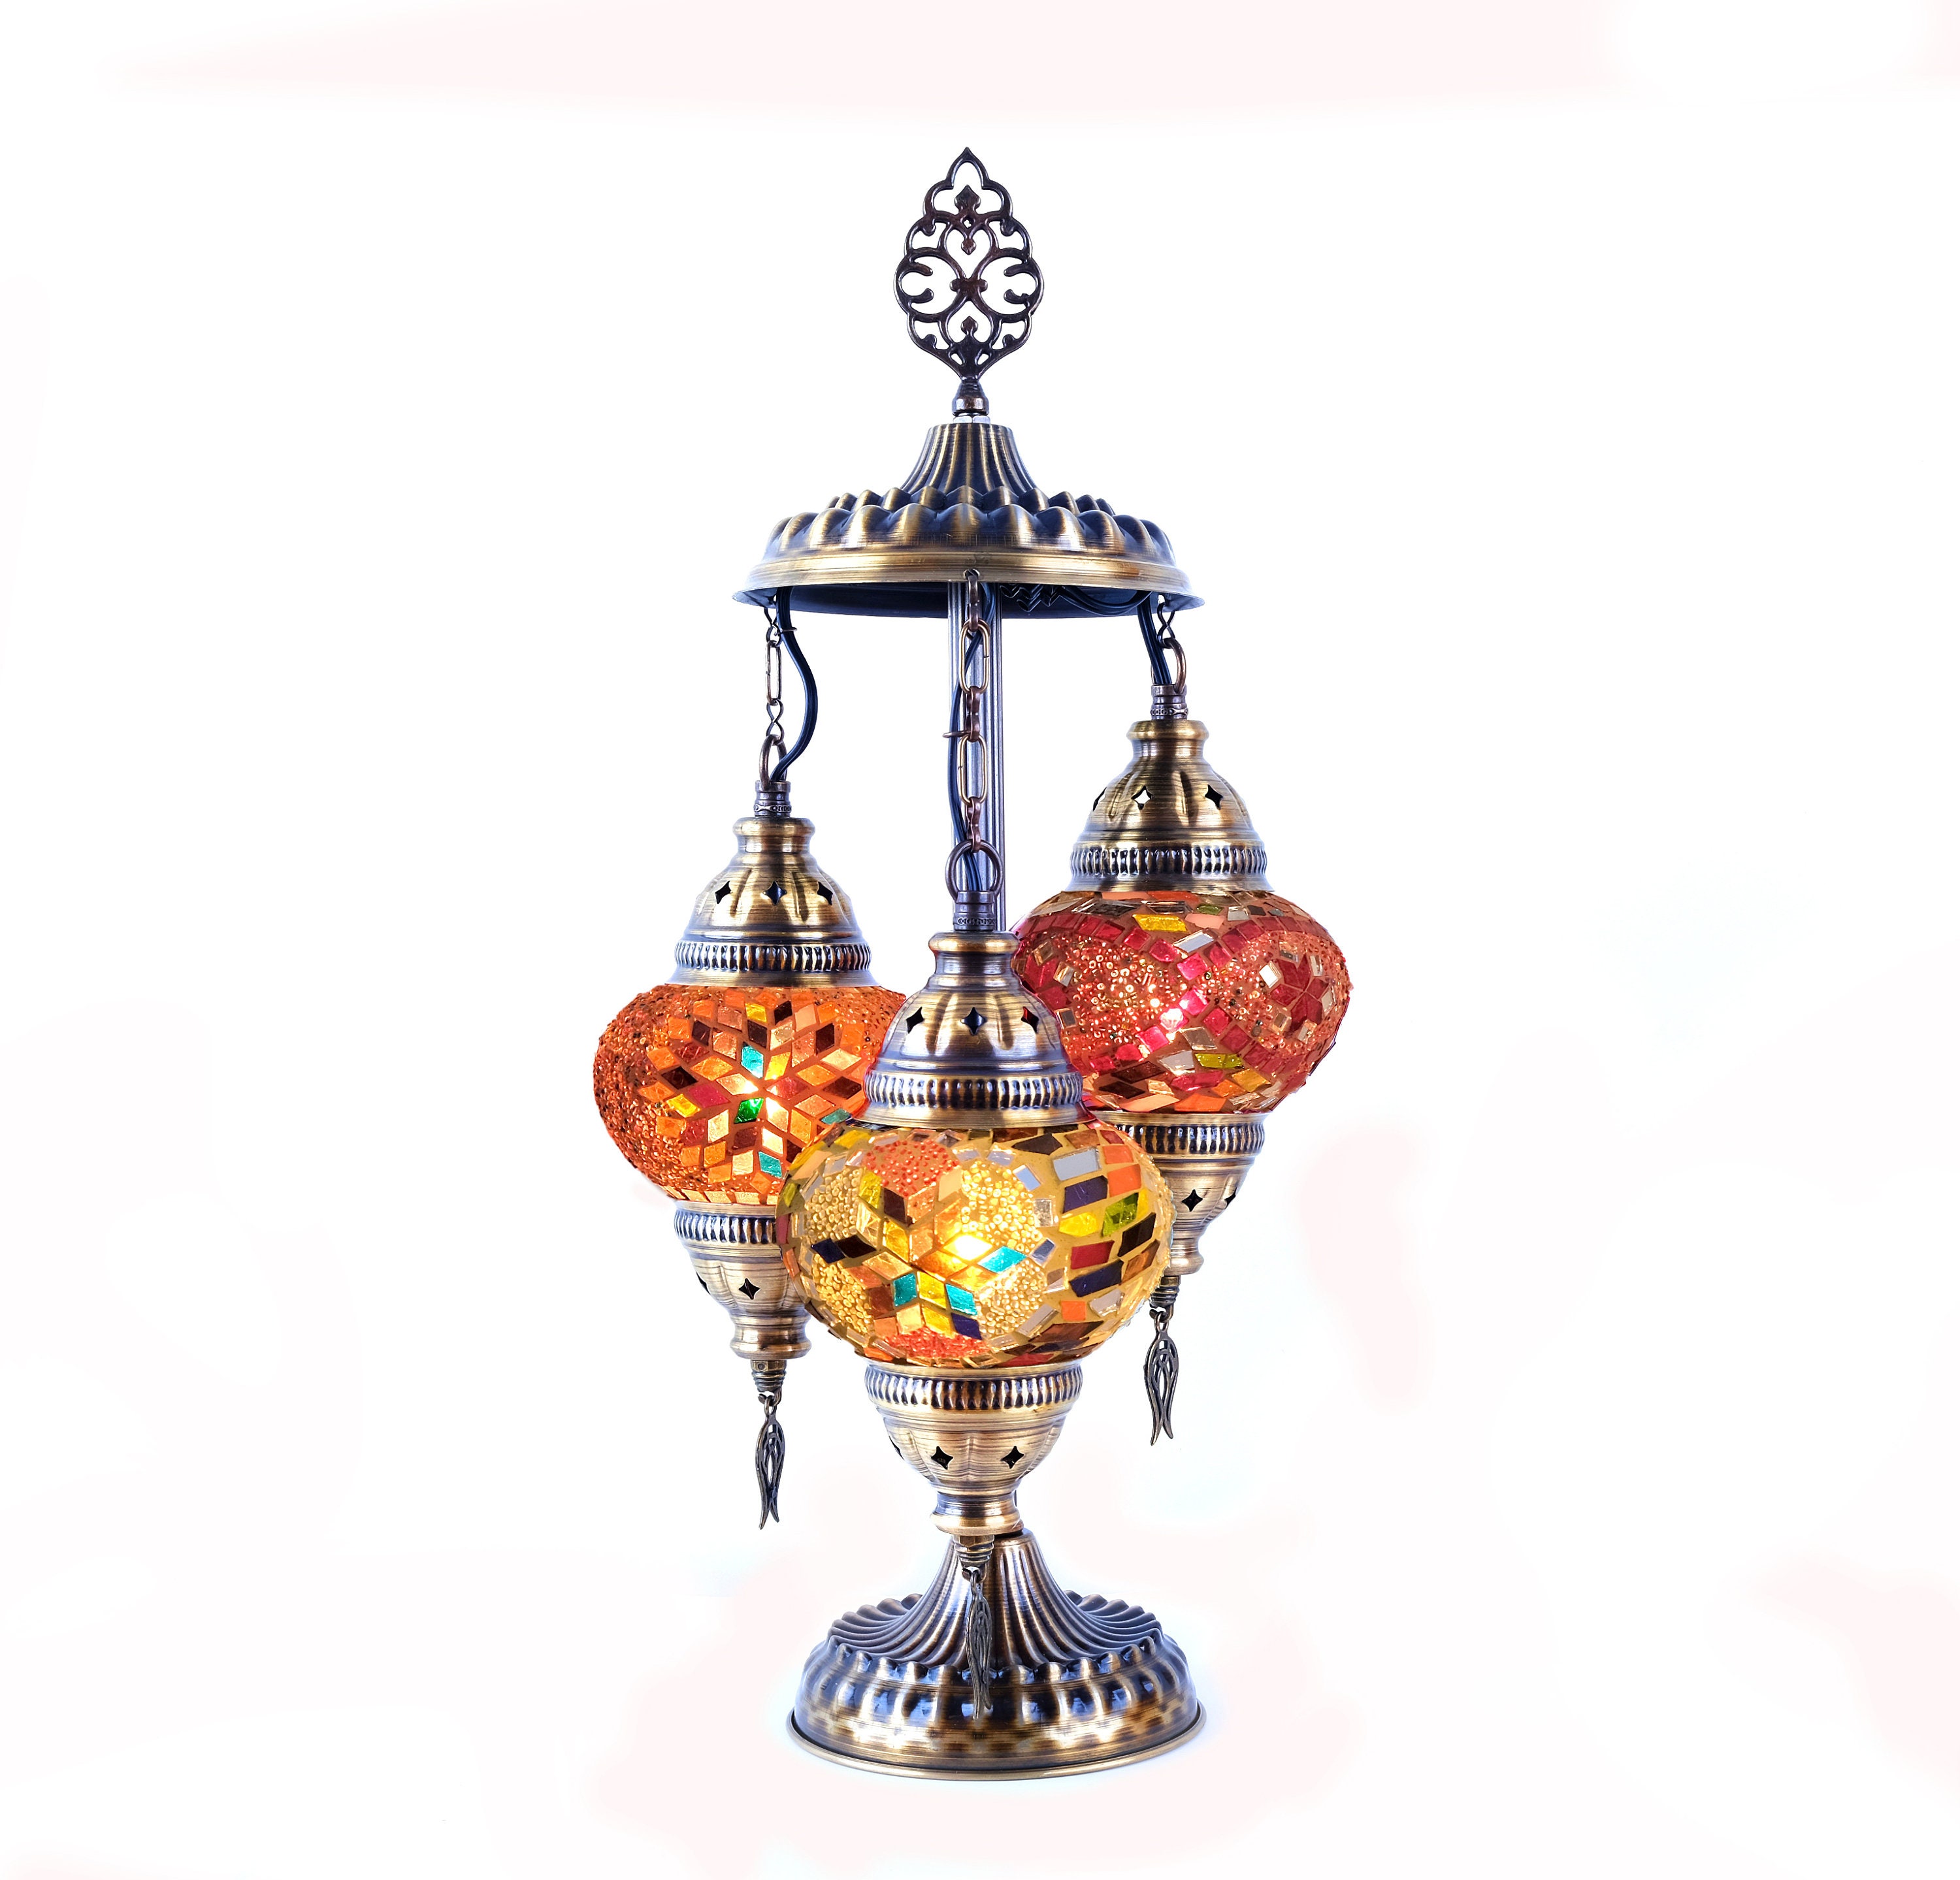 Ge Lot de 2 lampe de Table à Double Abat-Jour - Lampe de Chevet Verre doré  décorative prix tunisie 